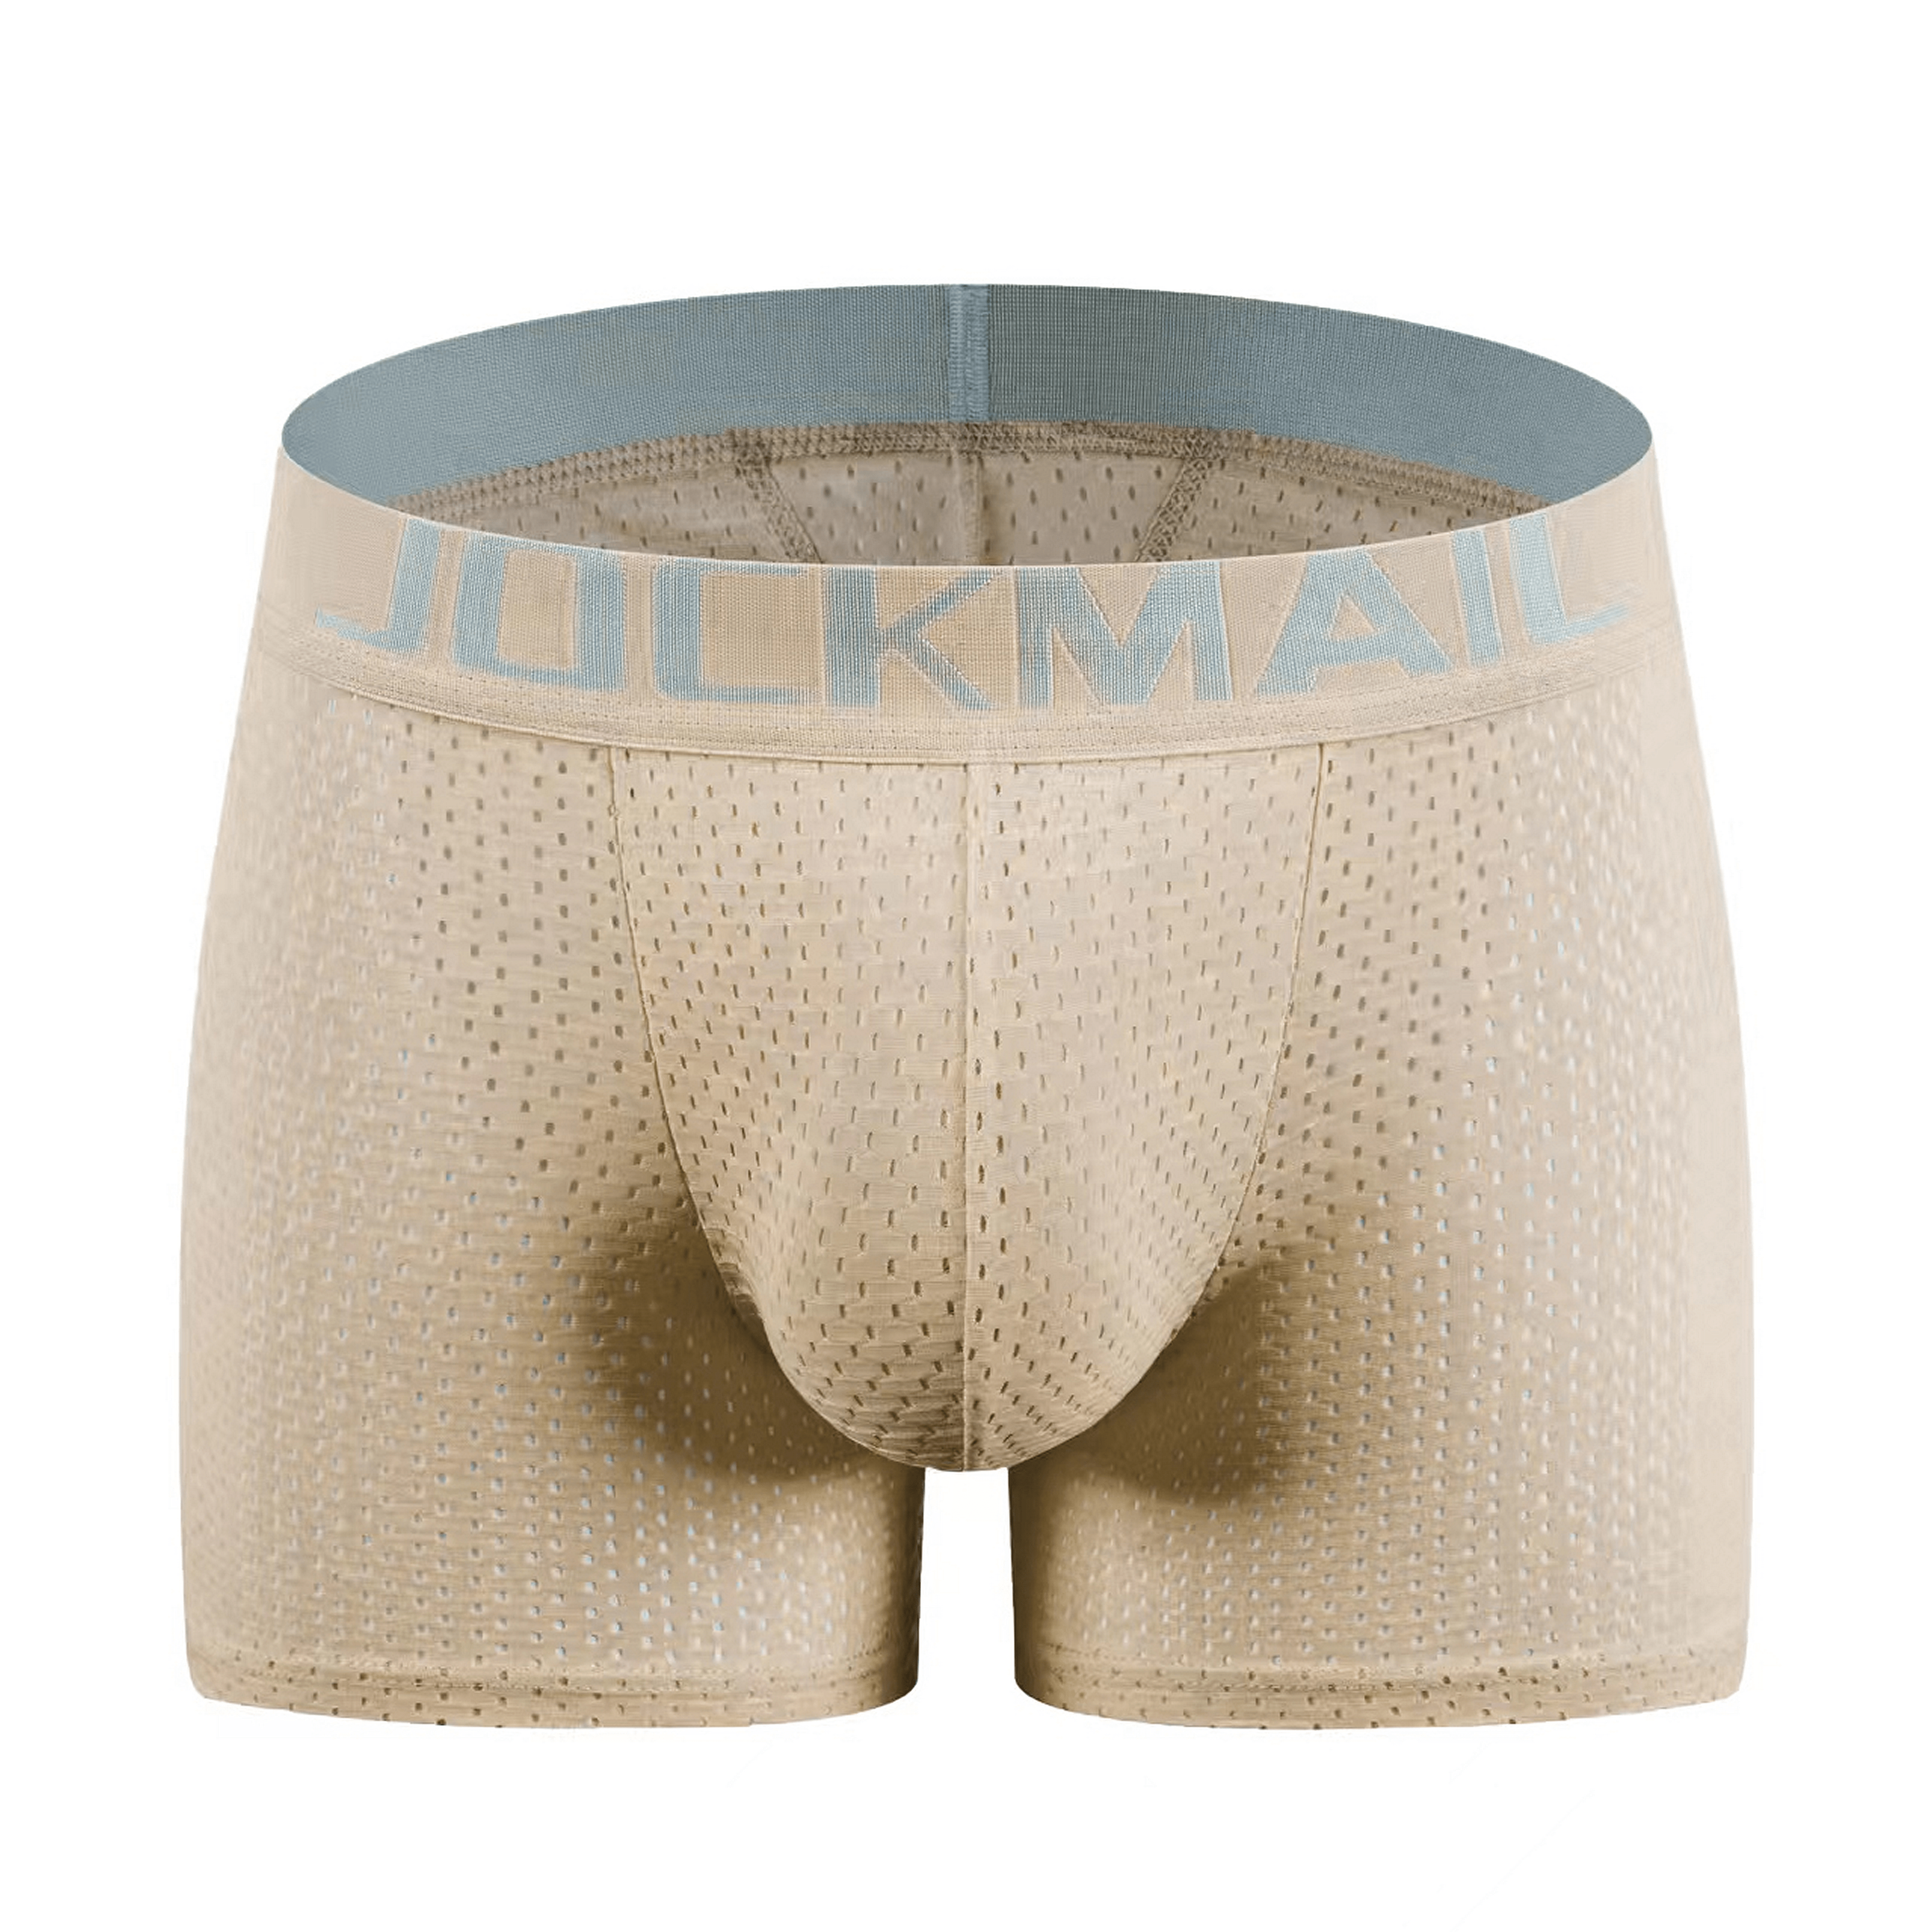 butt enhancement underwear - Buy butt enhancement underwear at Best Price  in Malaysia